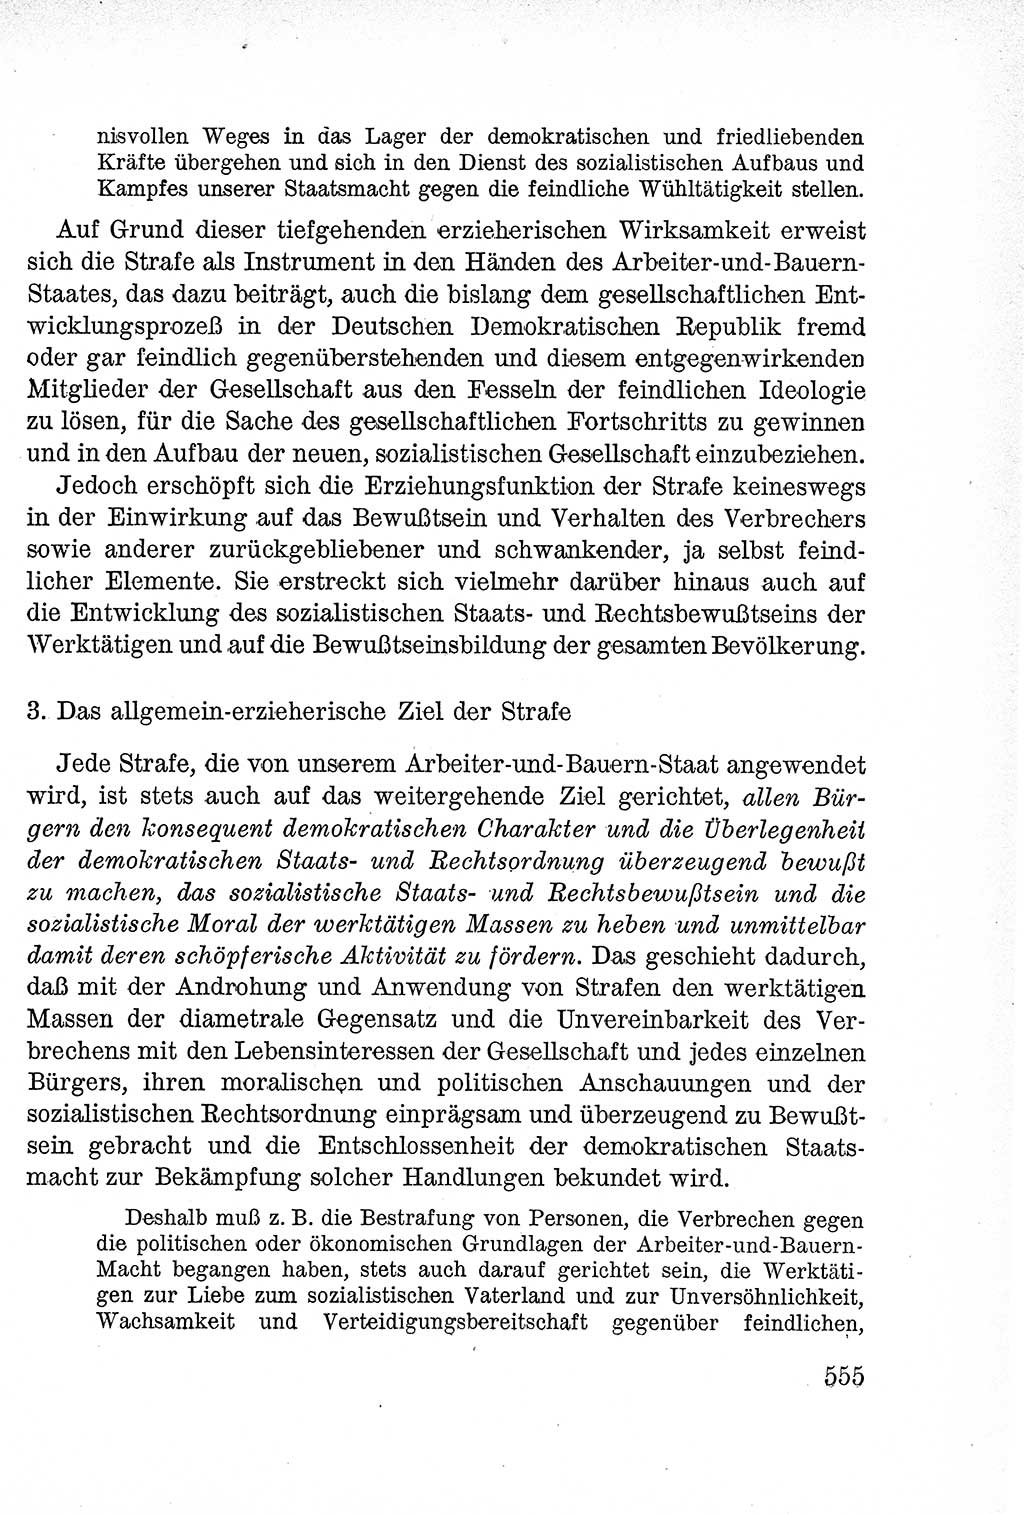 Lehrbuch des Strafrechts der Deutschen Demokratischen Republik (DDR), Allgemeiner Teil 1957, Seite 555 (Lb. Strafr. DDR AT 1957, S. 555)